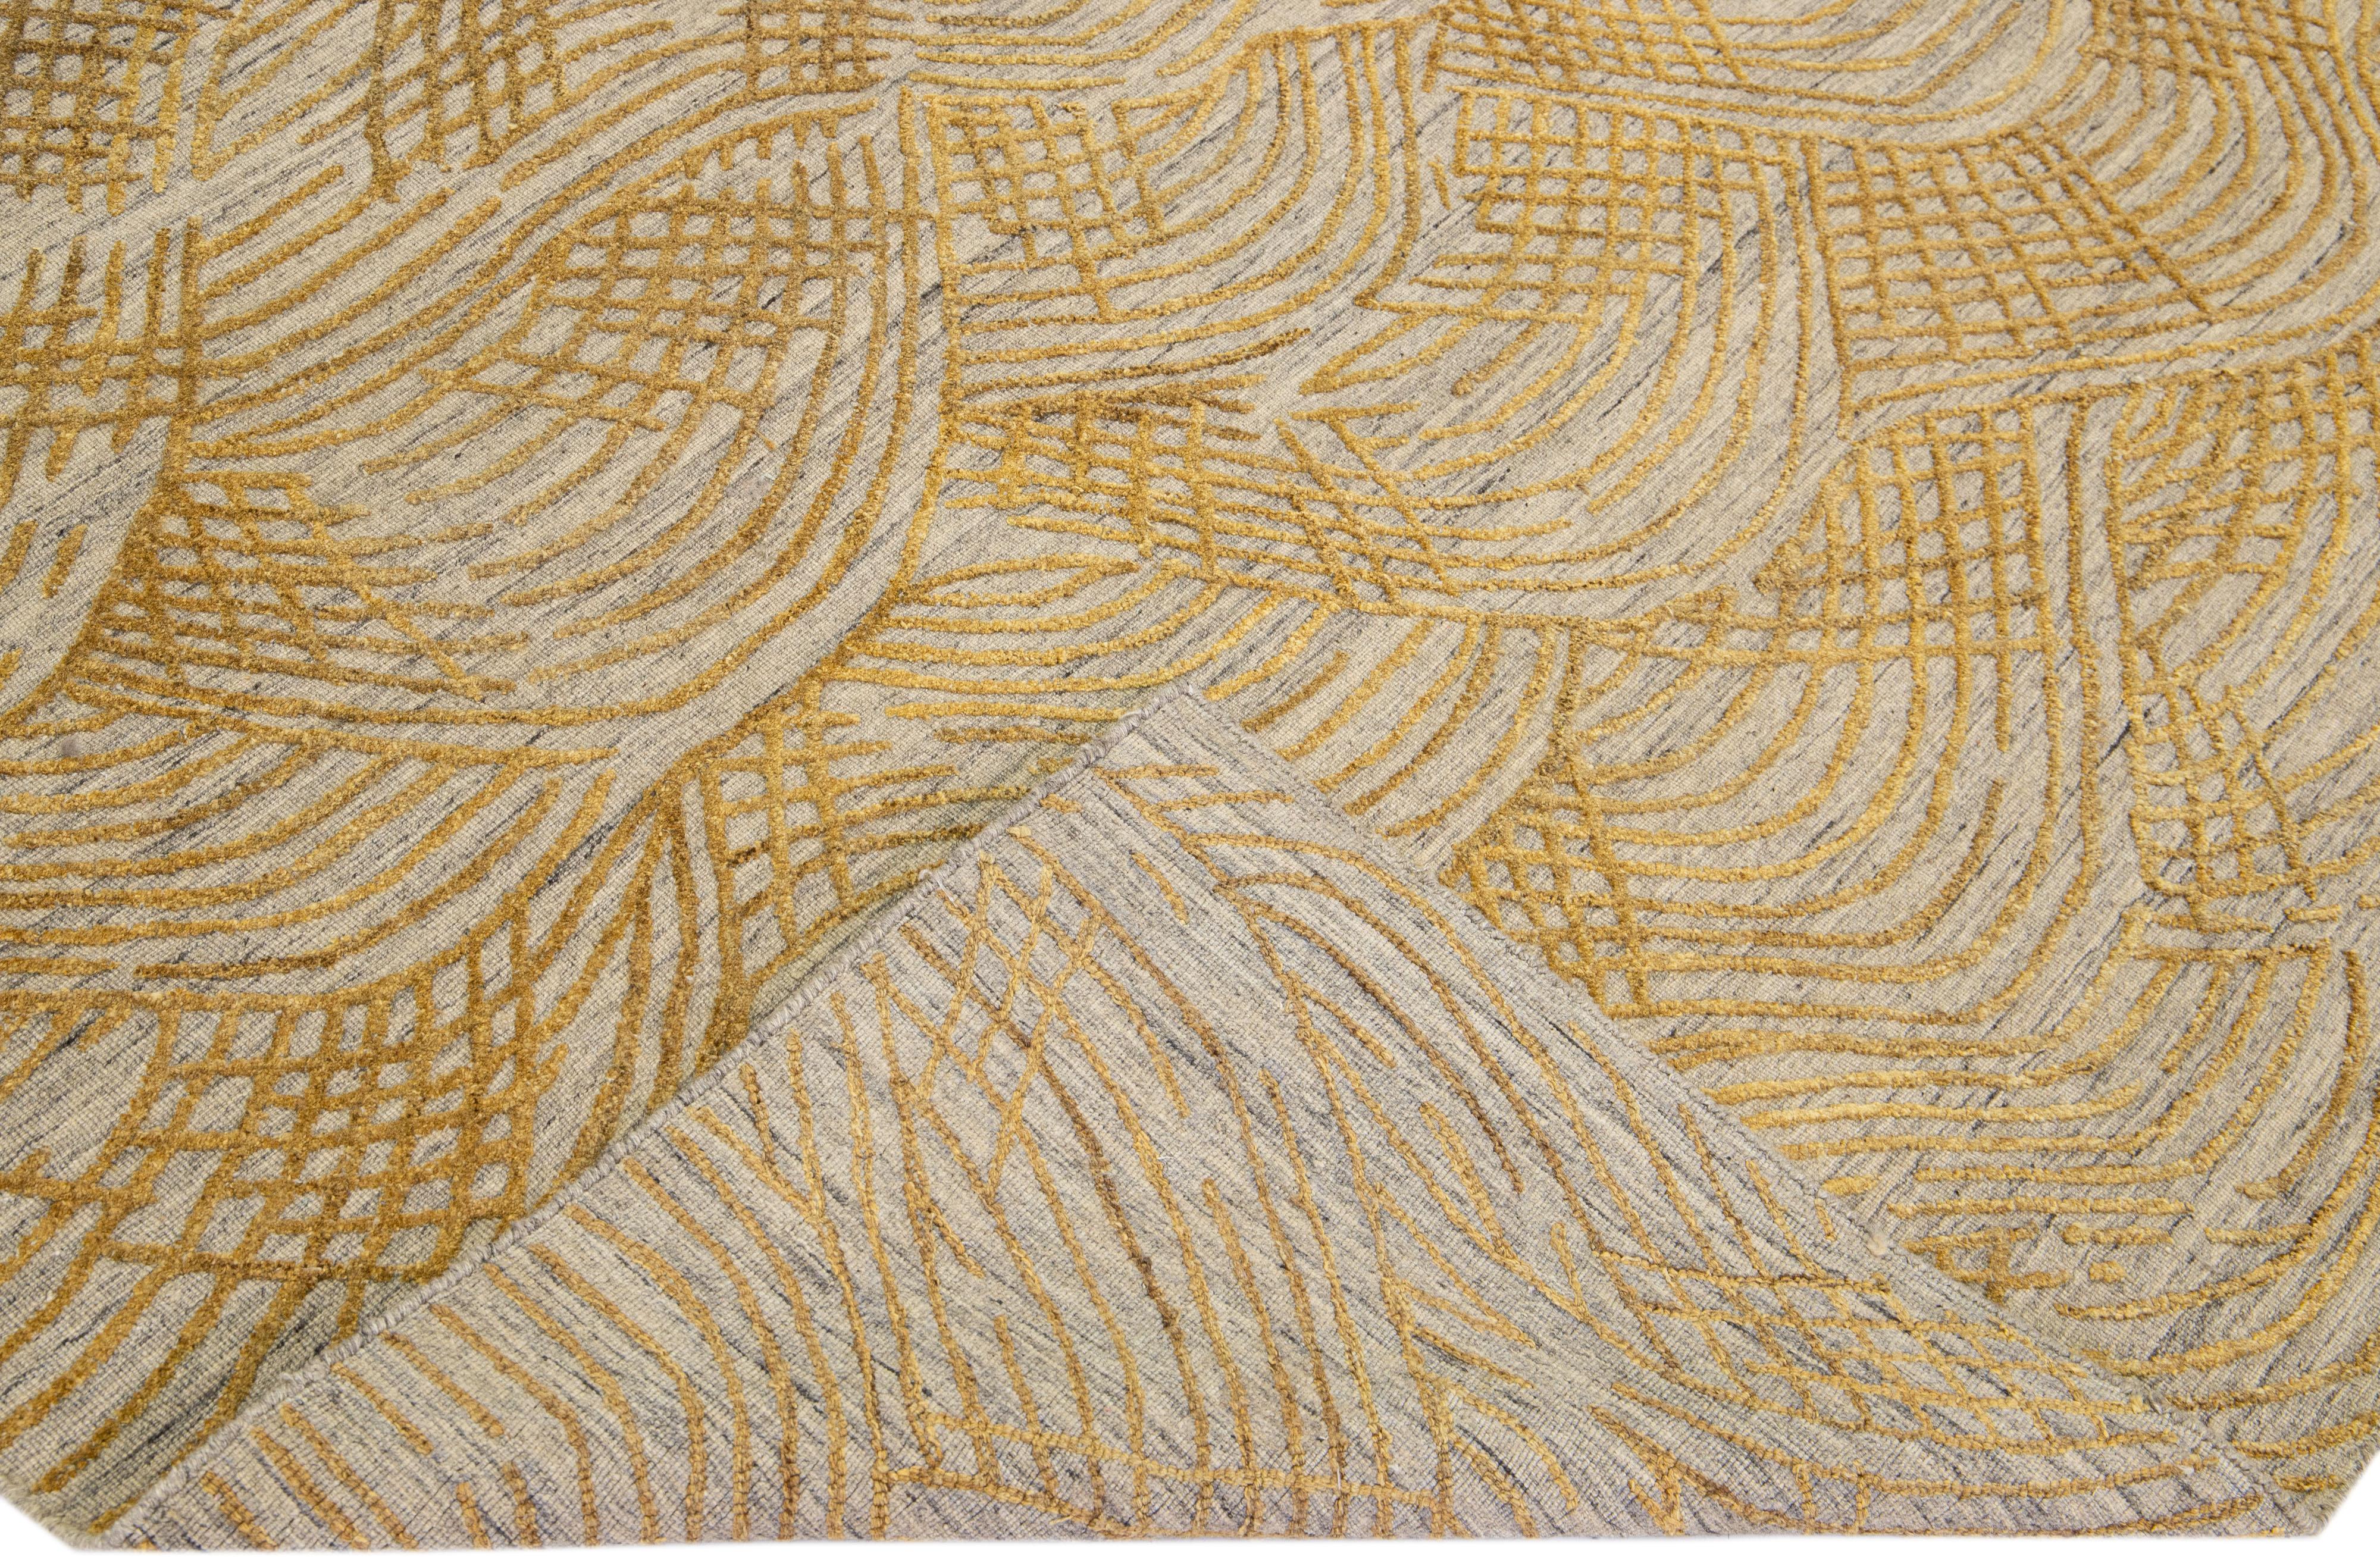 Schöne zeitgenössische Teppiche von Thom Filicia Home Collection. Dieser indische, handgewebte Teppich aus Wolle und Viskose hat ein grau/beiges Feld und goldene Akzente im gesamten Design. 
Thom Filicias Auge für exquisite Details und schöne